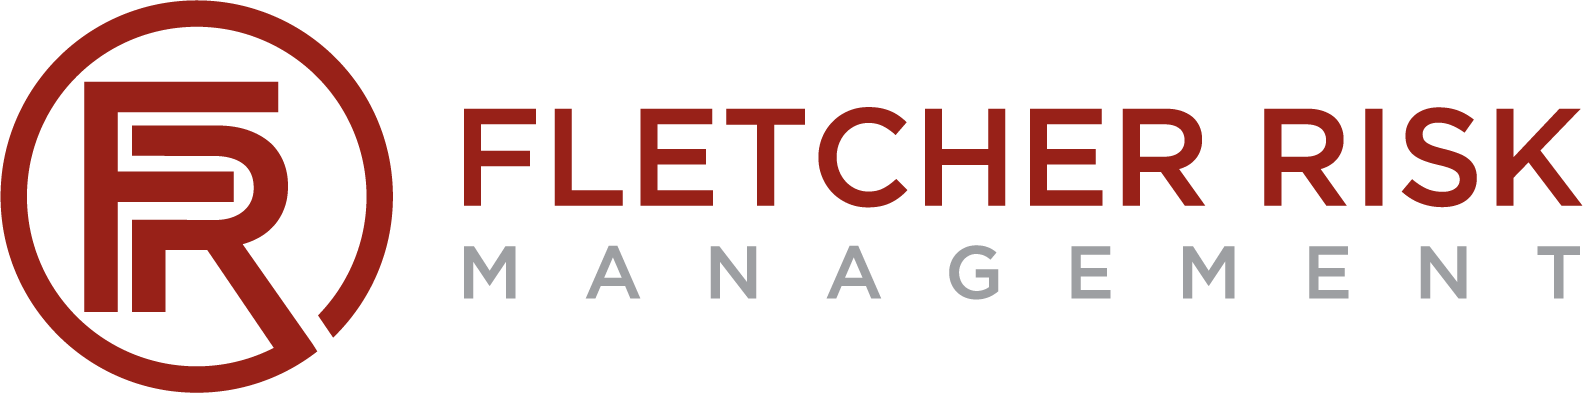 Fletcher Risk Management